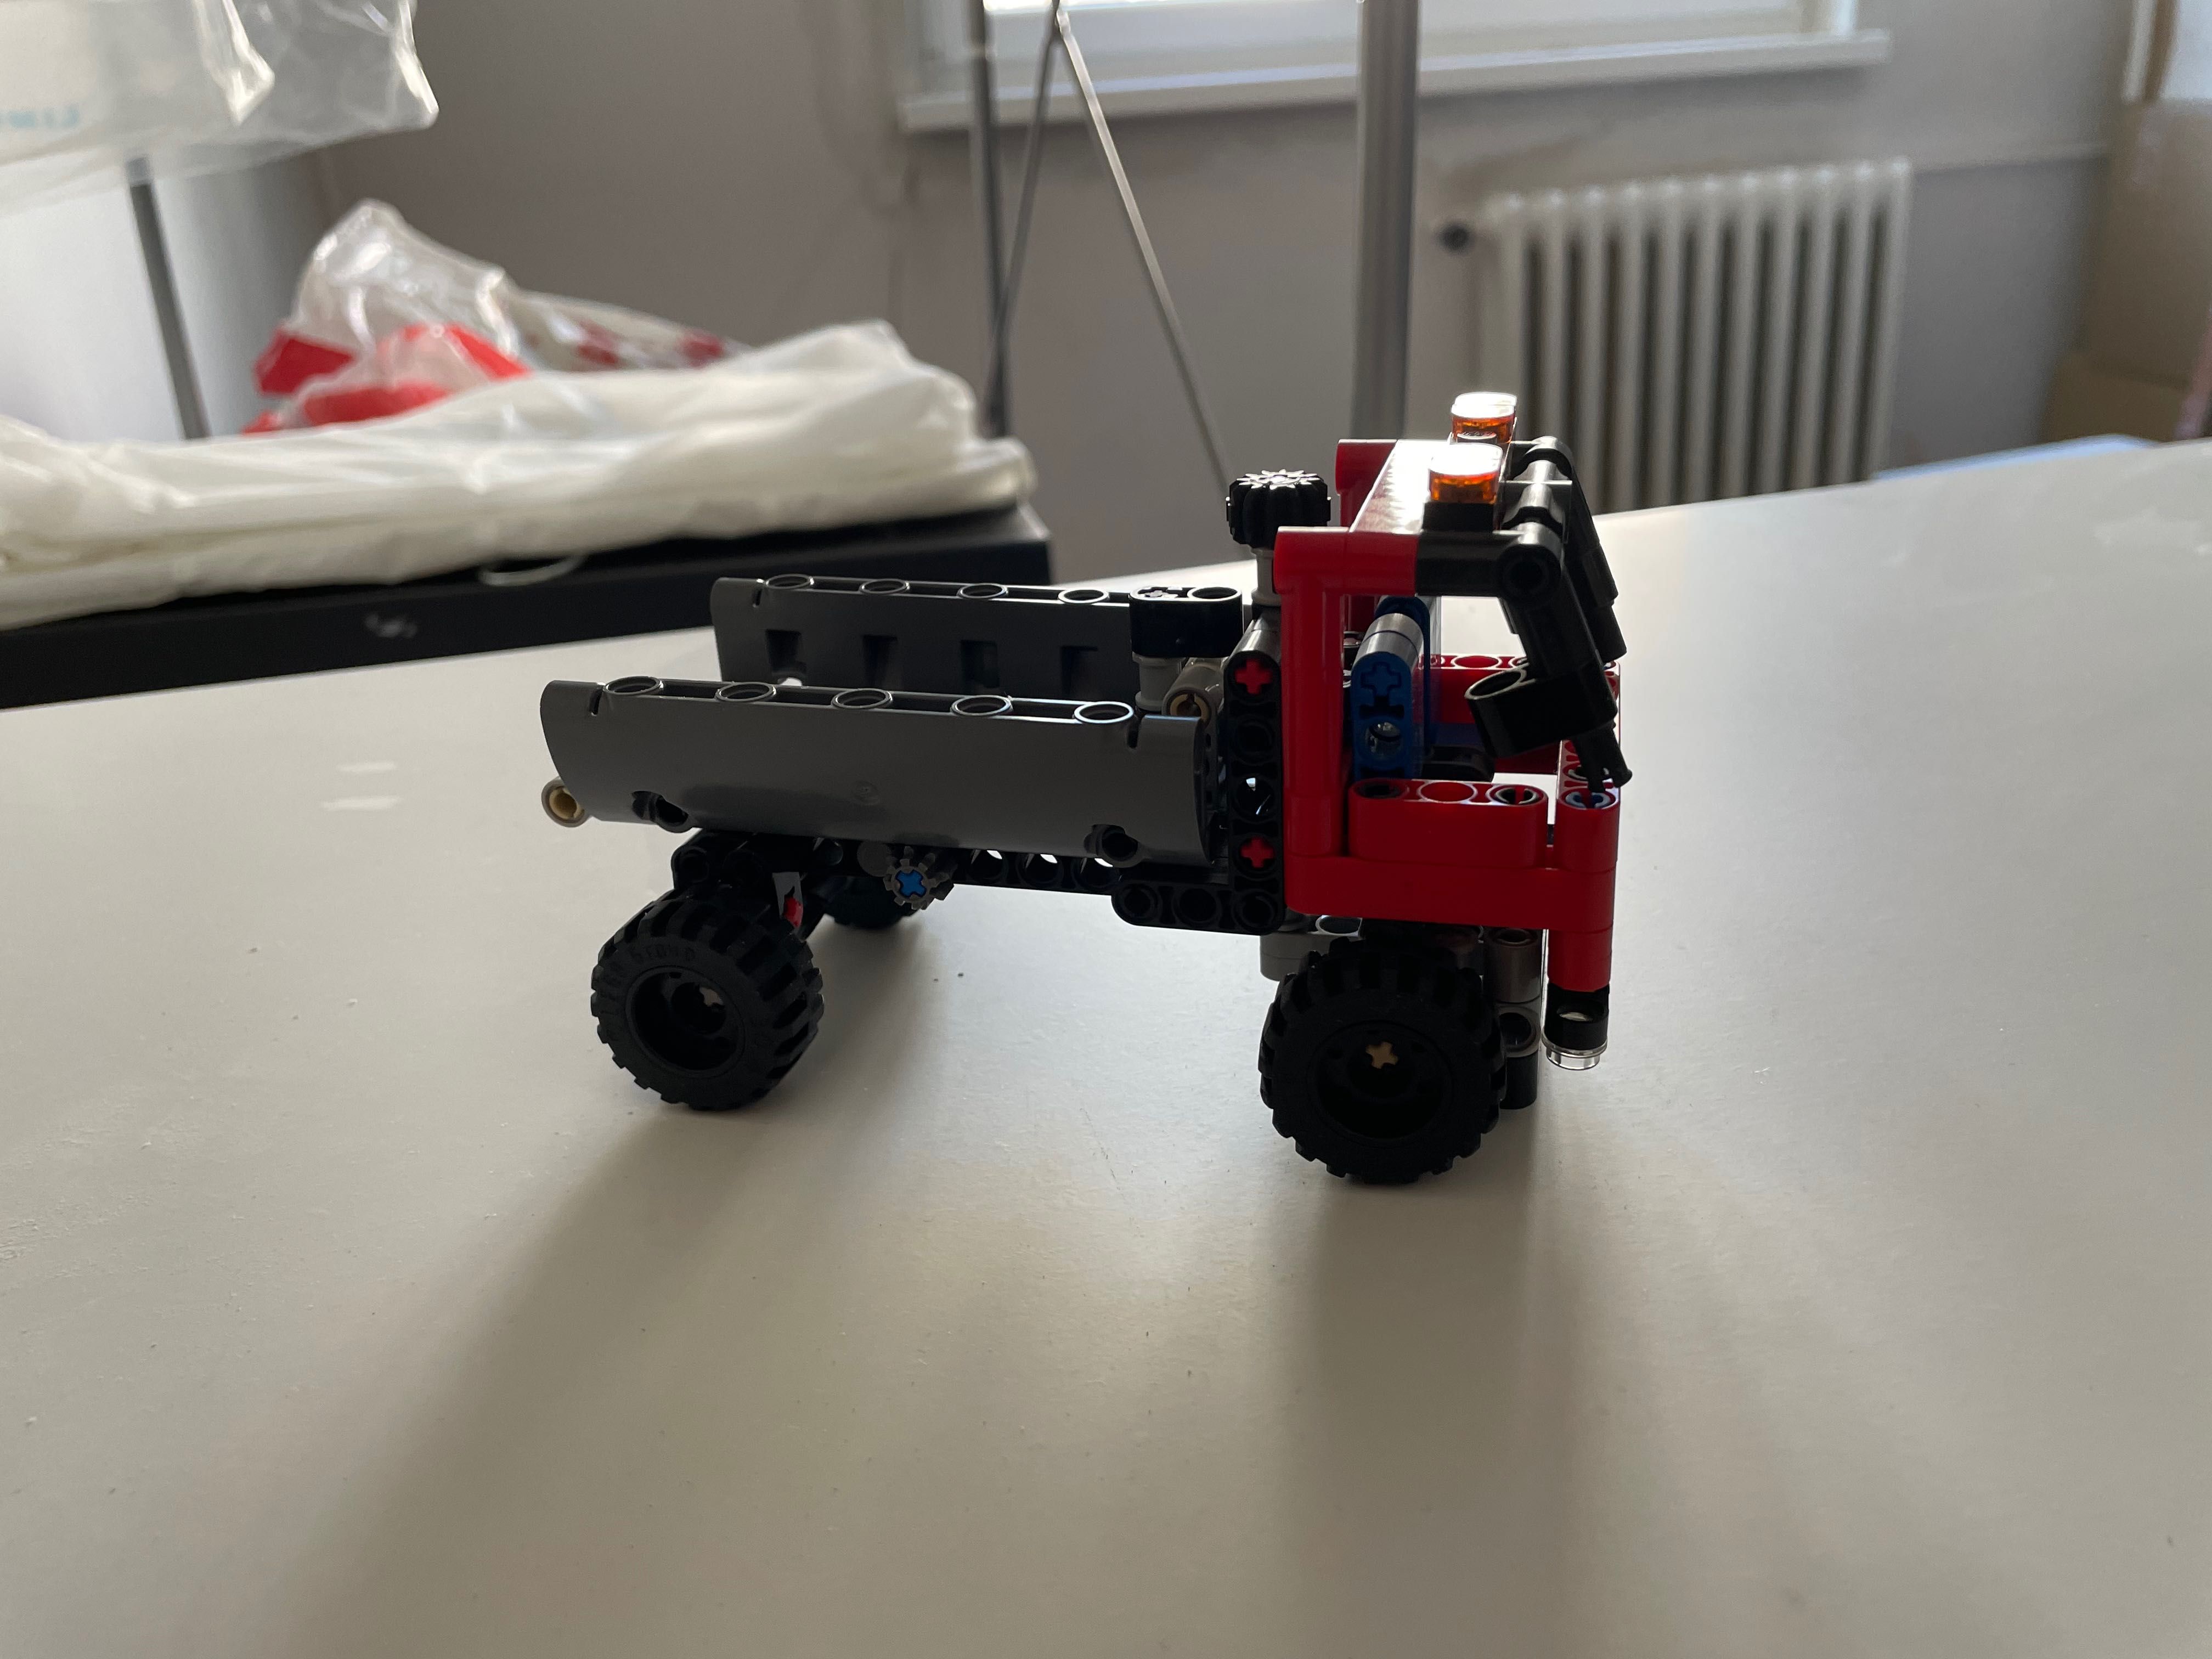 Lego tehnic 42084